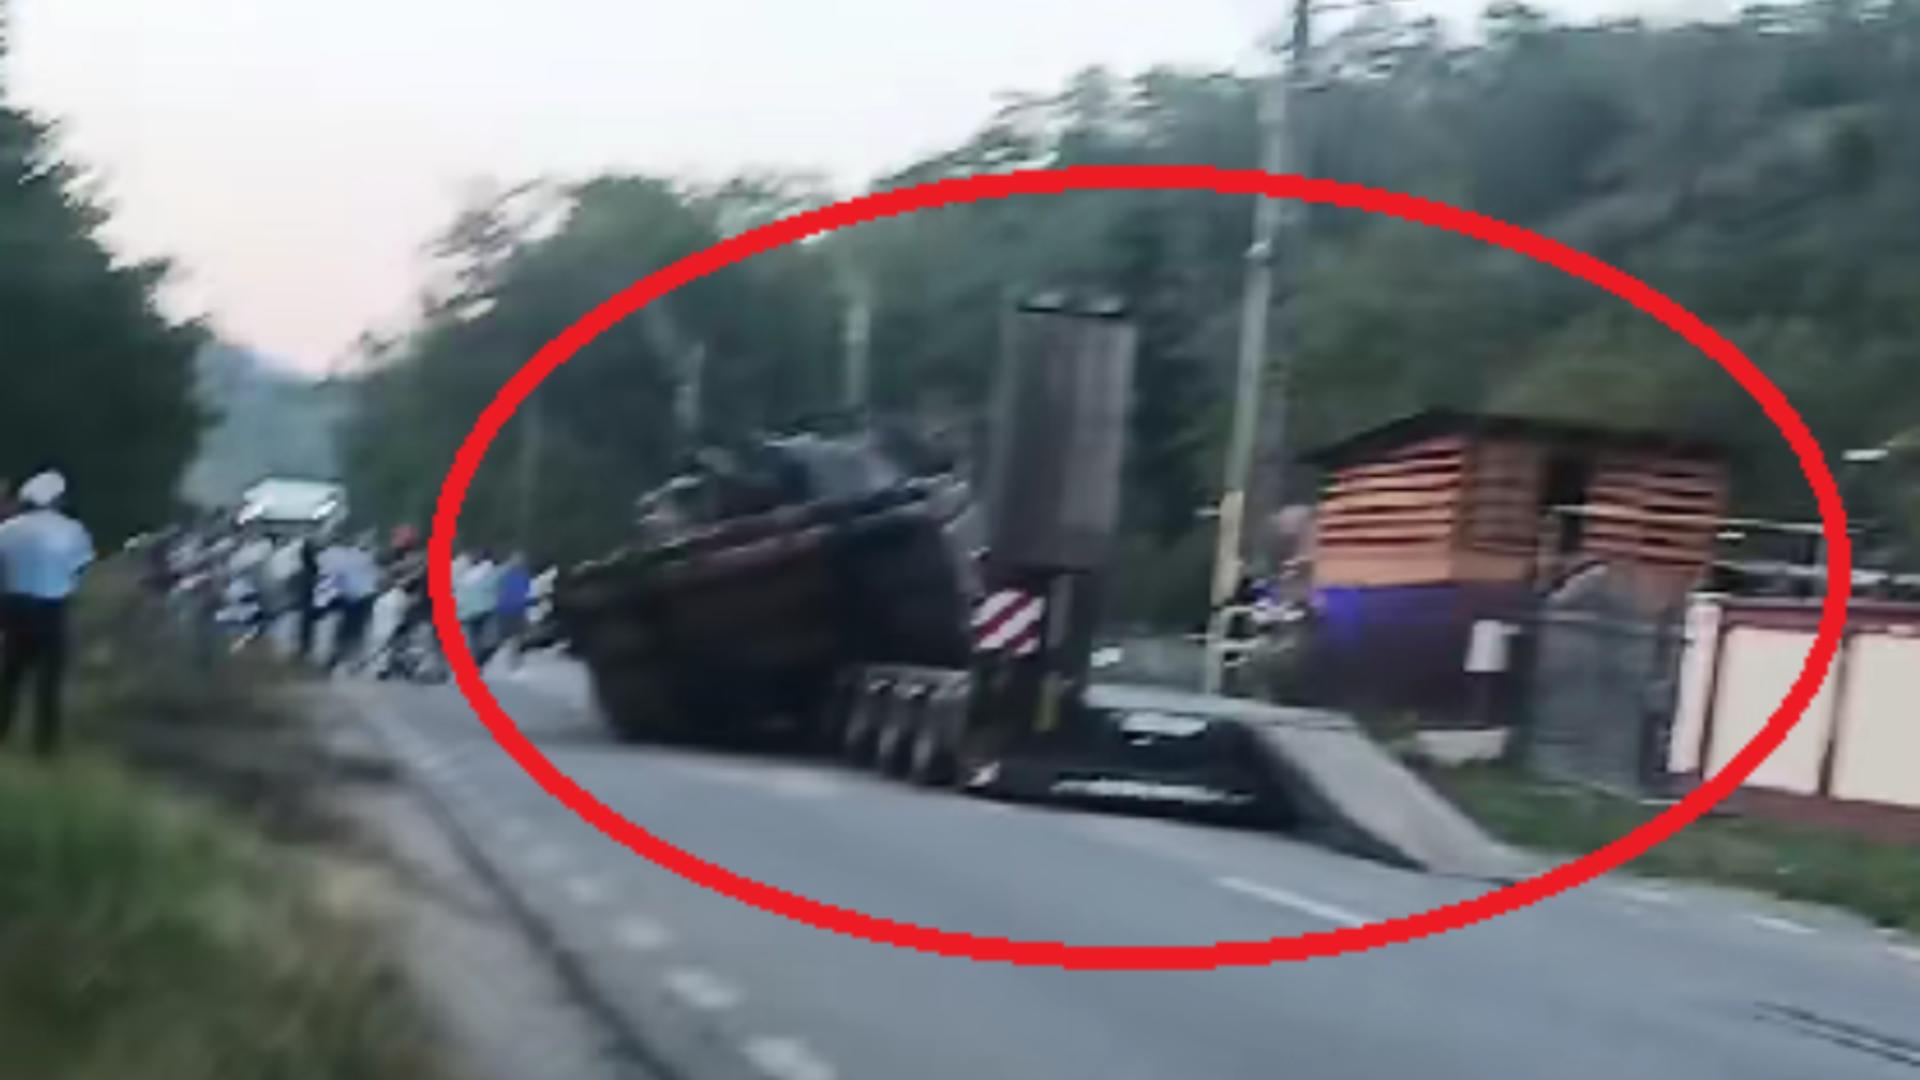 Un tanc a căzut de pe platforma care îl transporta! Șoferul a evitat “la mustață” un pieton care traversa neregulamentar